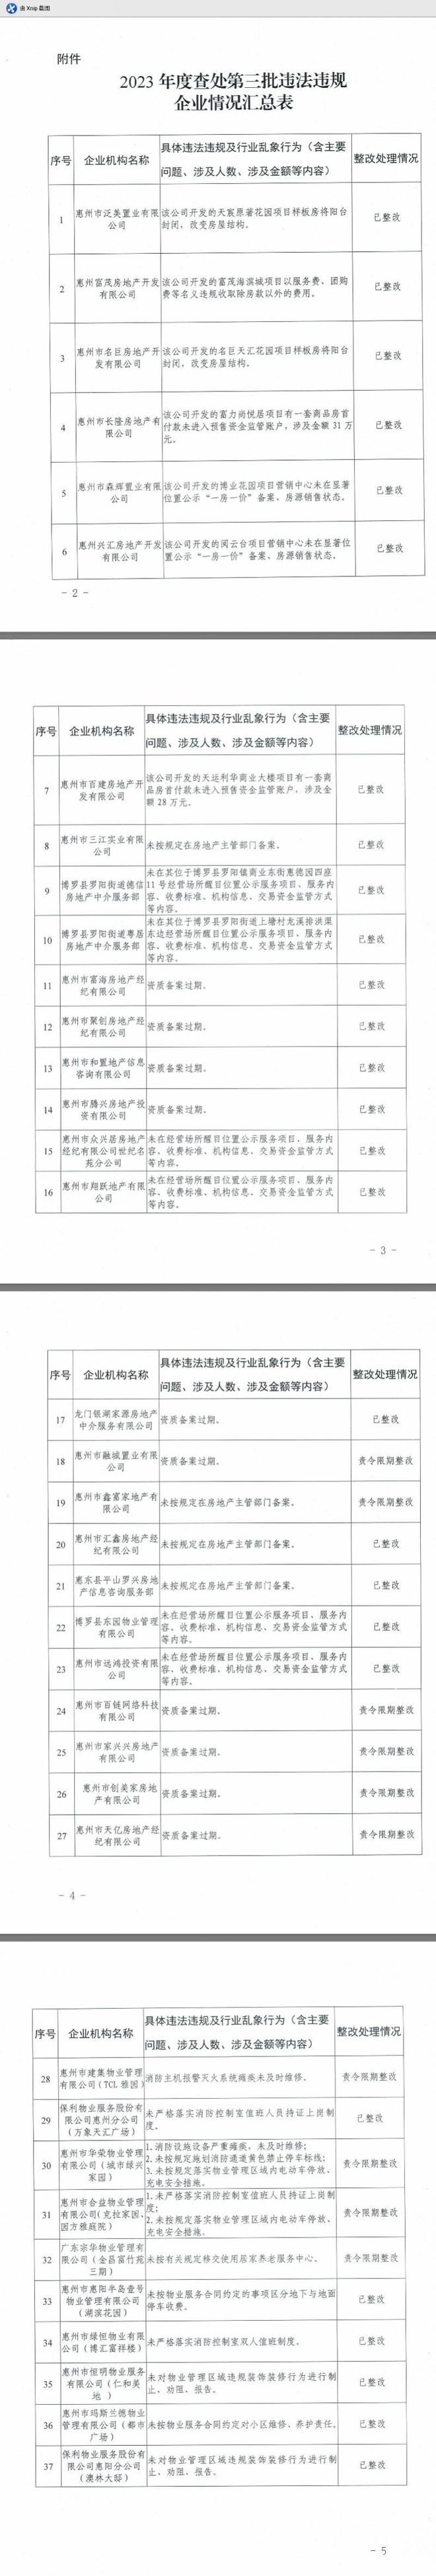 惠州8家房企、19家中介、10家物管公司被住建通报批评